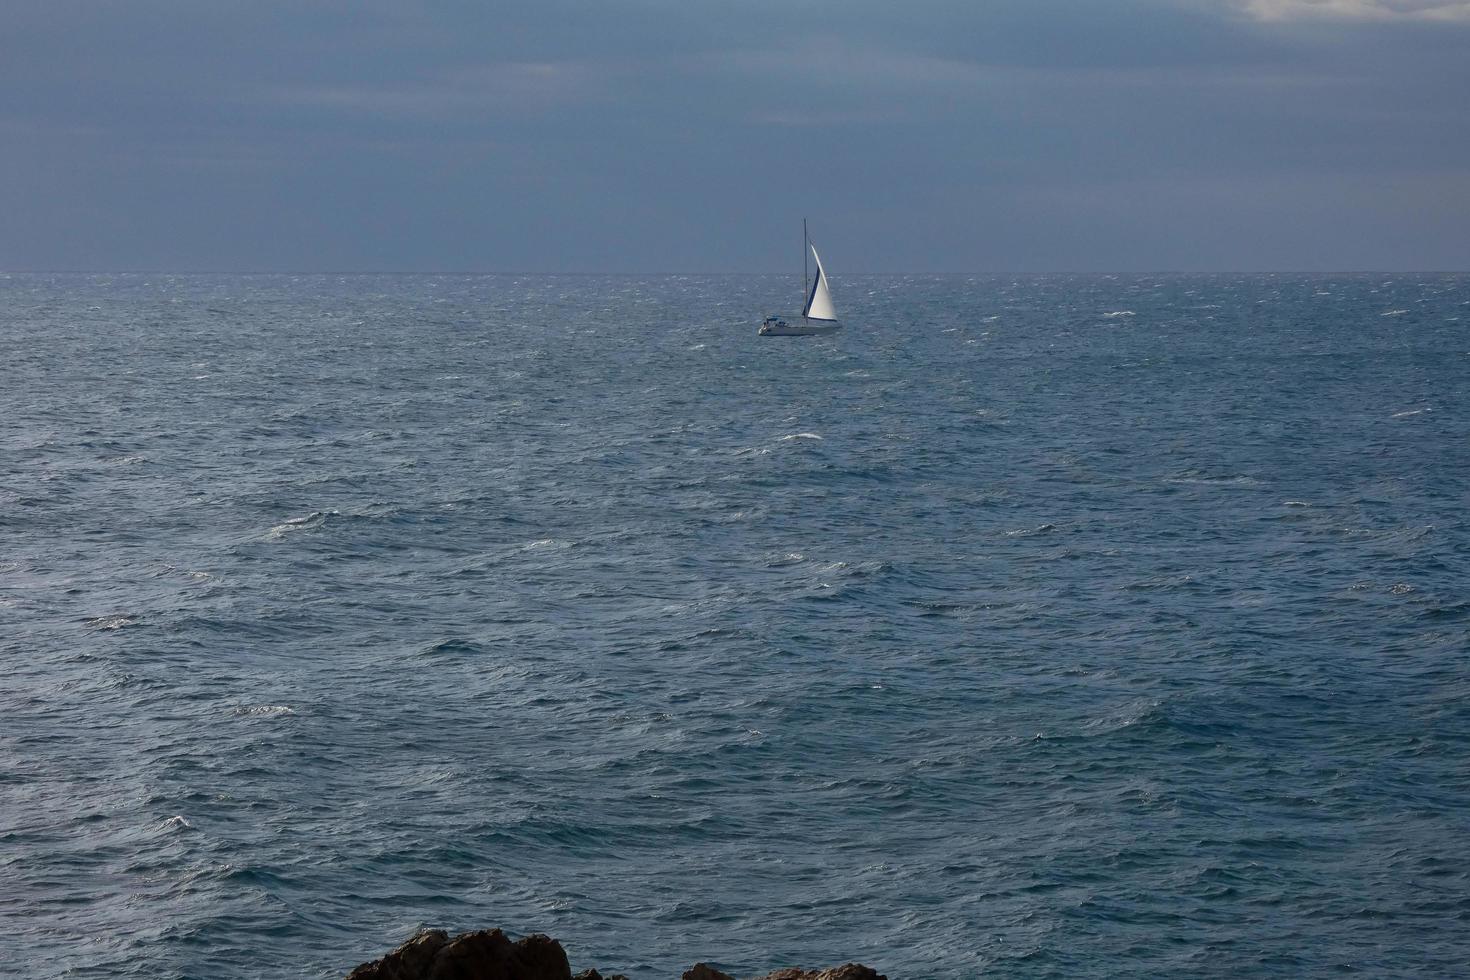 segelbåt segling i de medelhavs hav, lugna vattnen foto